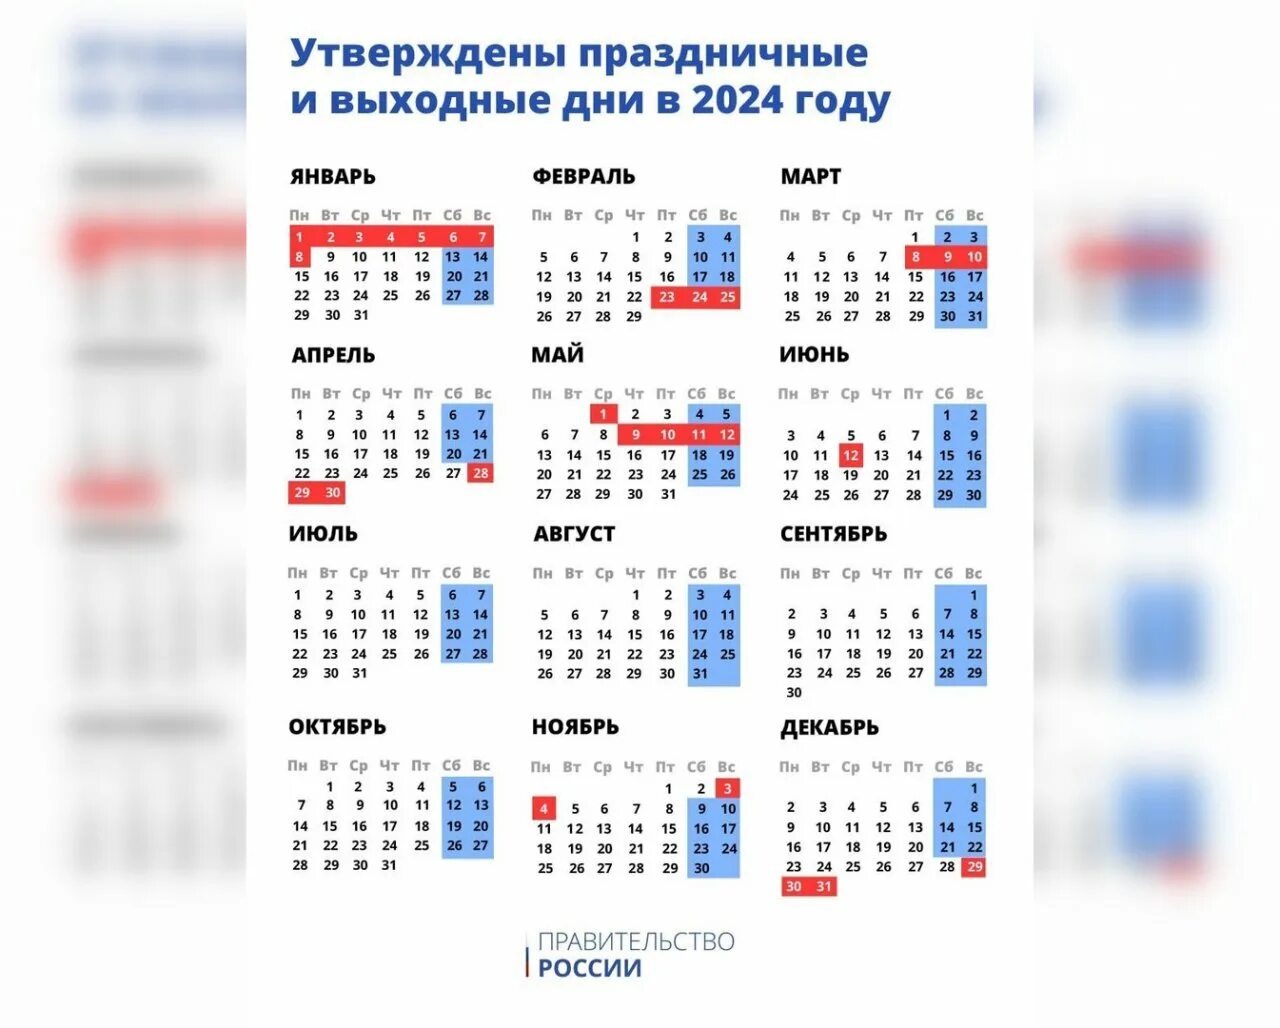 Наурыз сколько дней отдыхаем 2024 в казахстане. Календарь выходных и праздничных на этот год. Календарь праздничных дней 2024. DS[jlyst LYB D hjcbb d 2024 ujle. Выходные и праздничные дни в 2024 году в России.